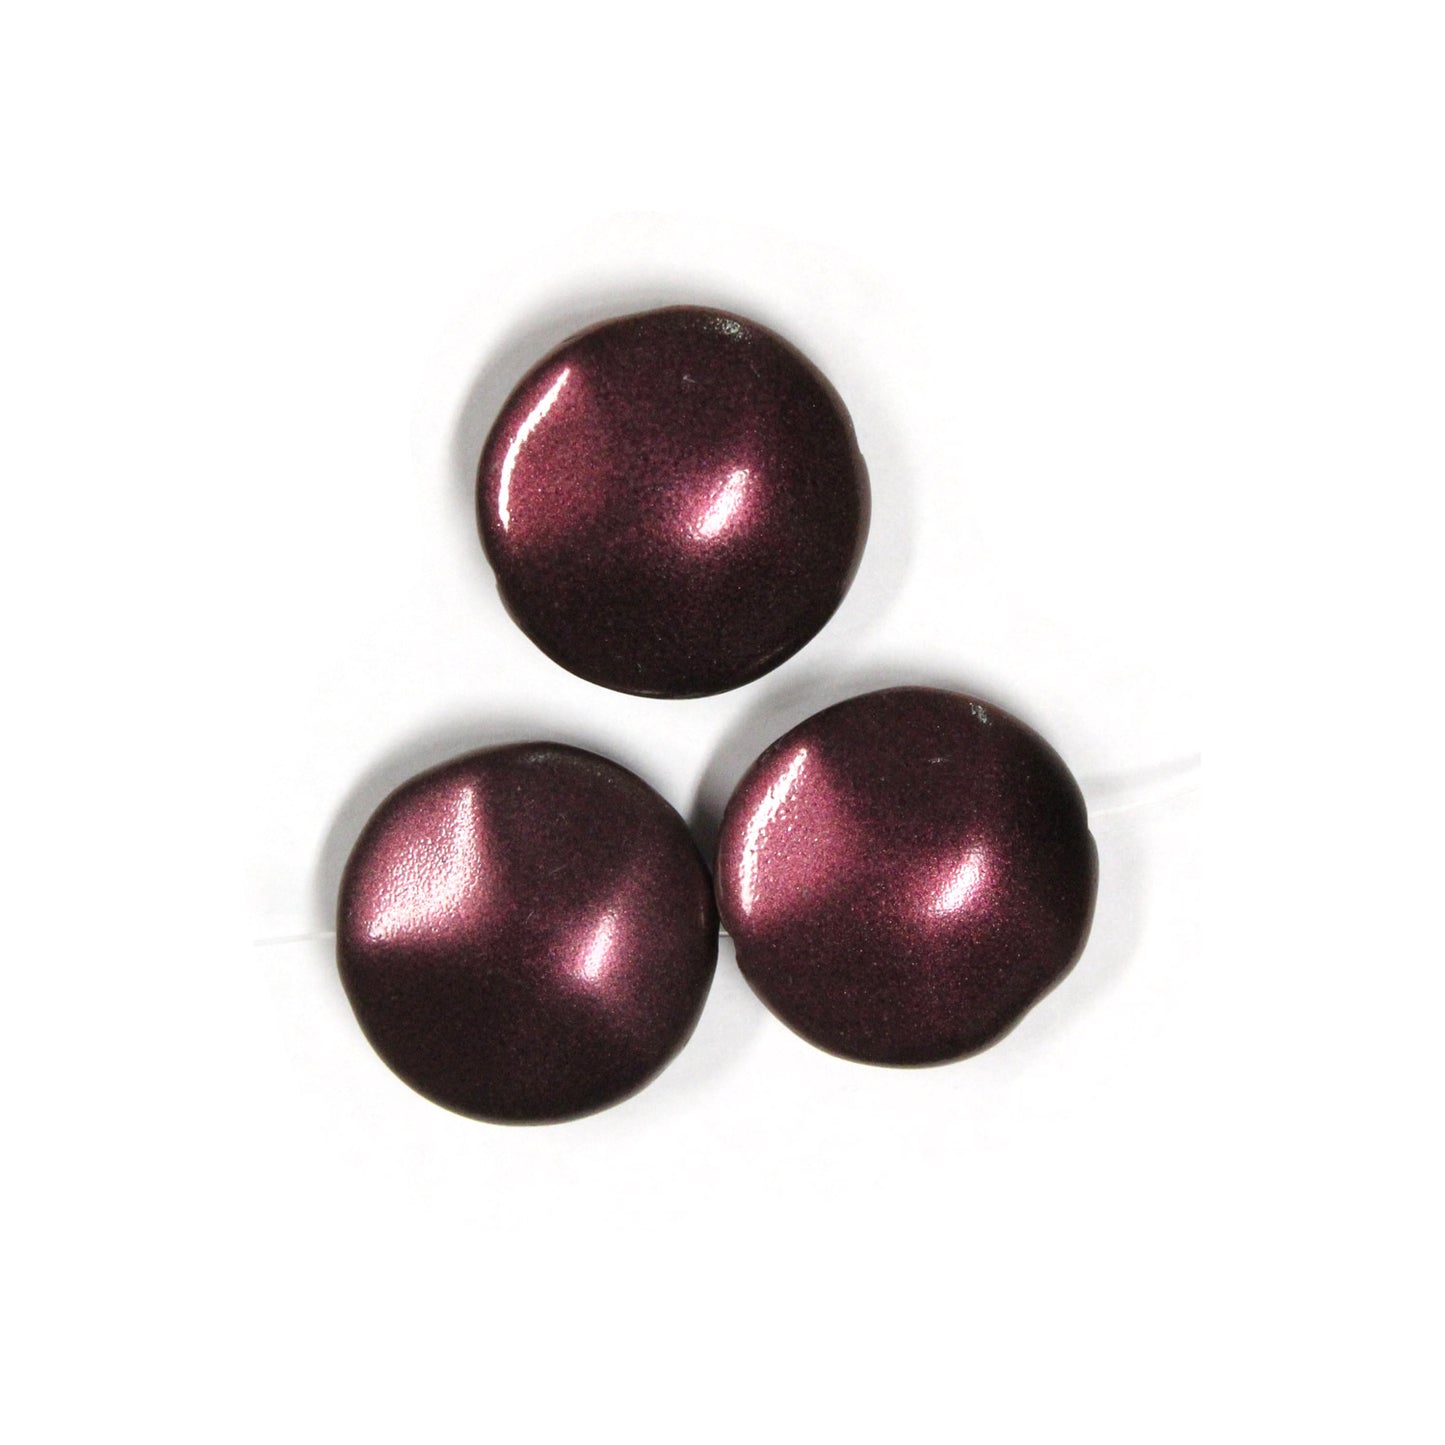 20mm Metallic Plum Glass Coin Beads / 9 Bead Pack / irregular round puffed shape bead / Czech glass